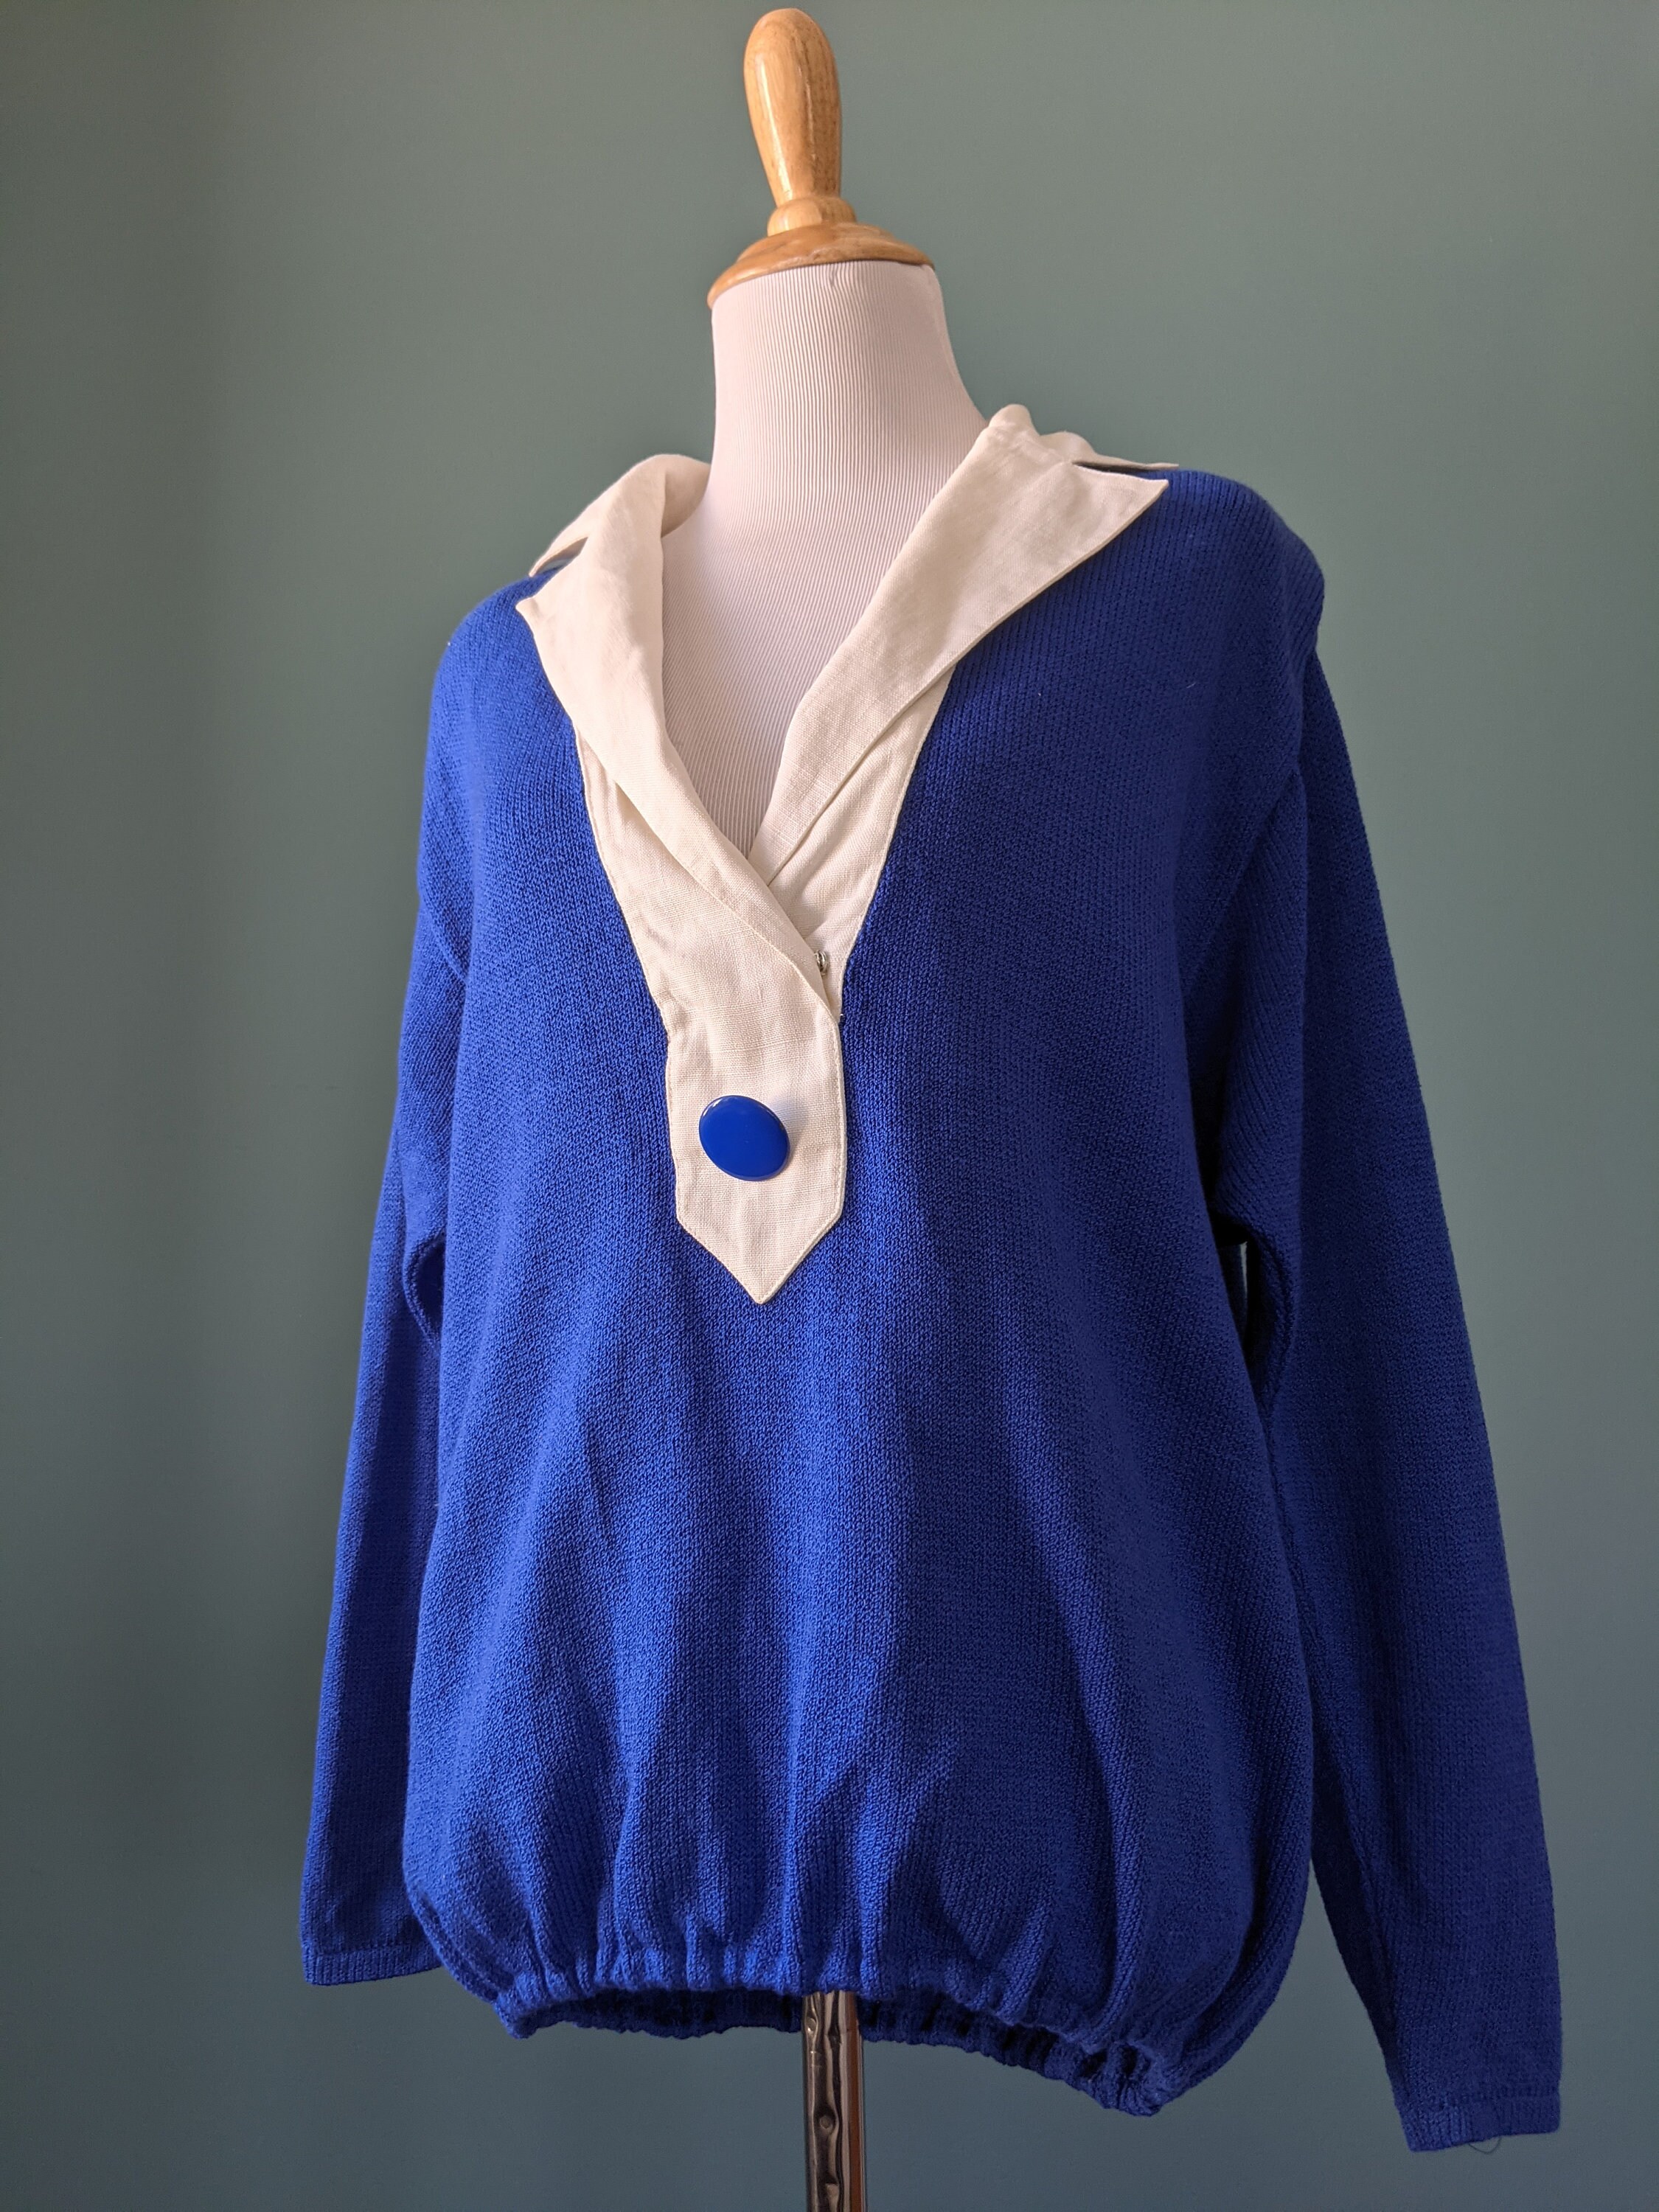 Vintage 80s Cobalt Blue Royal Blue Knit St. John Sweater | Etsy